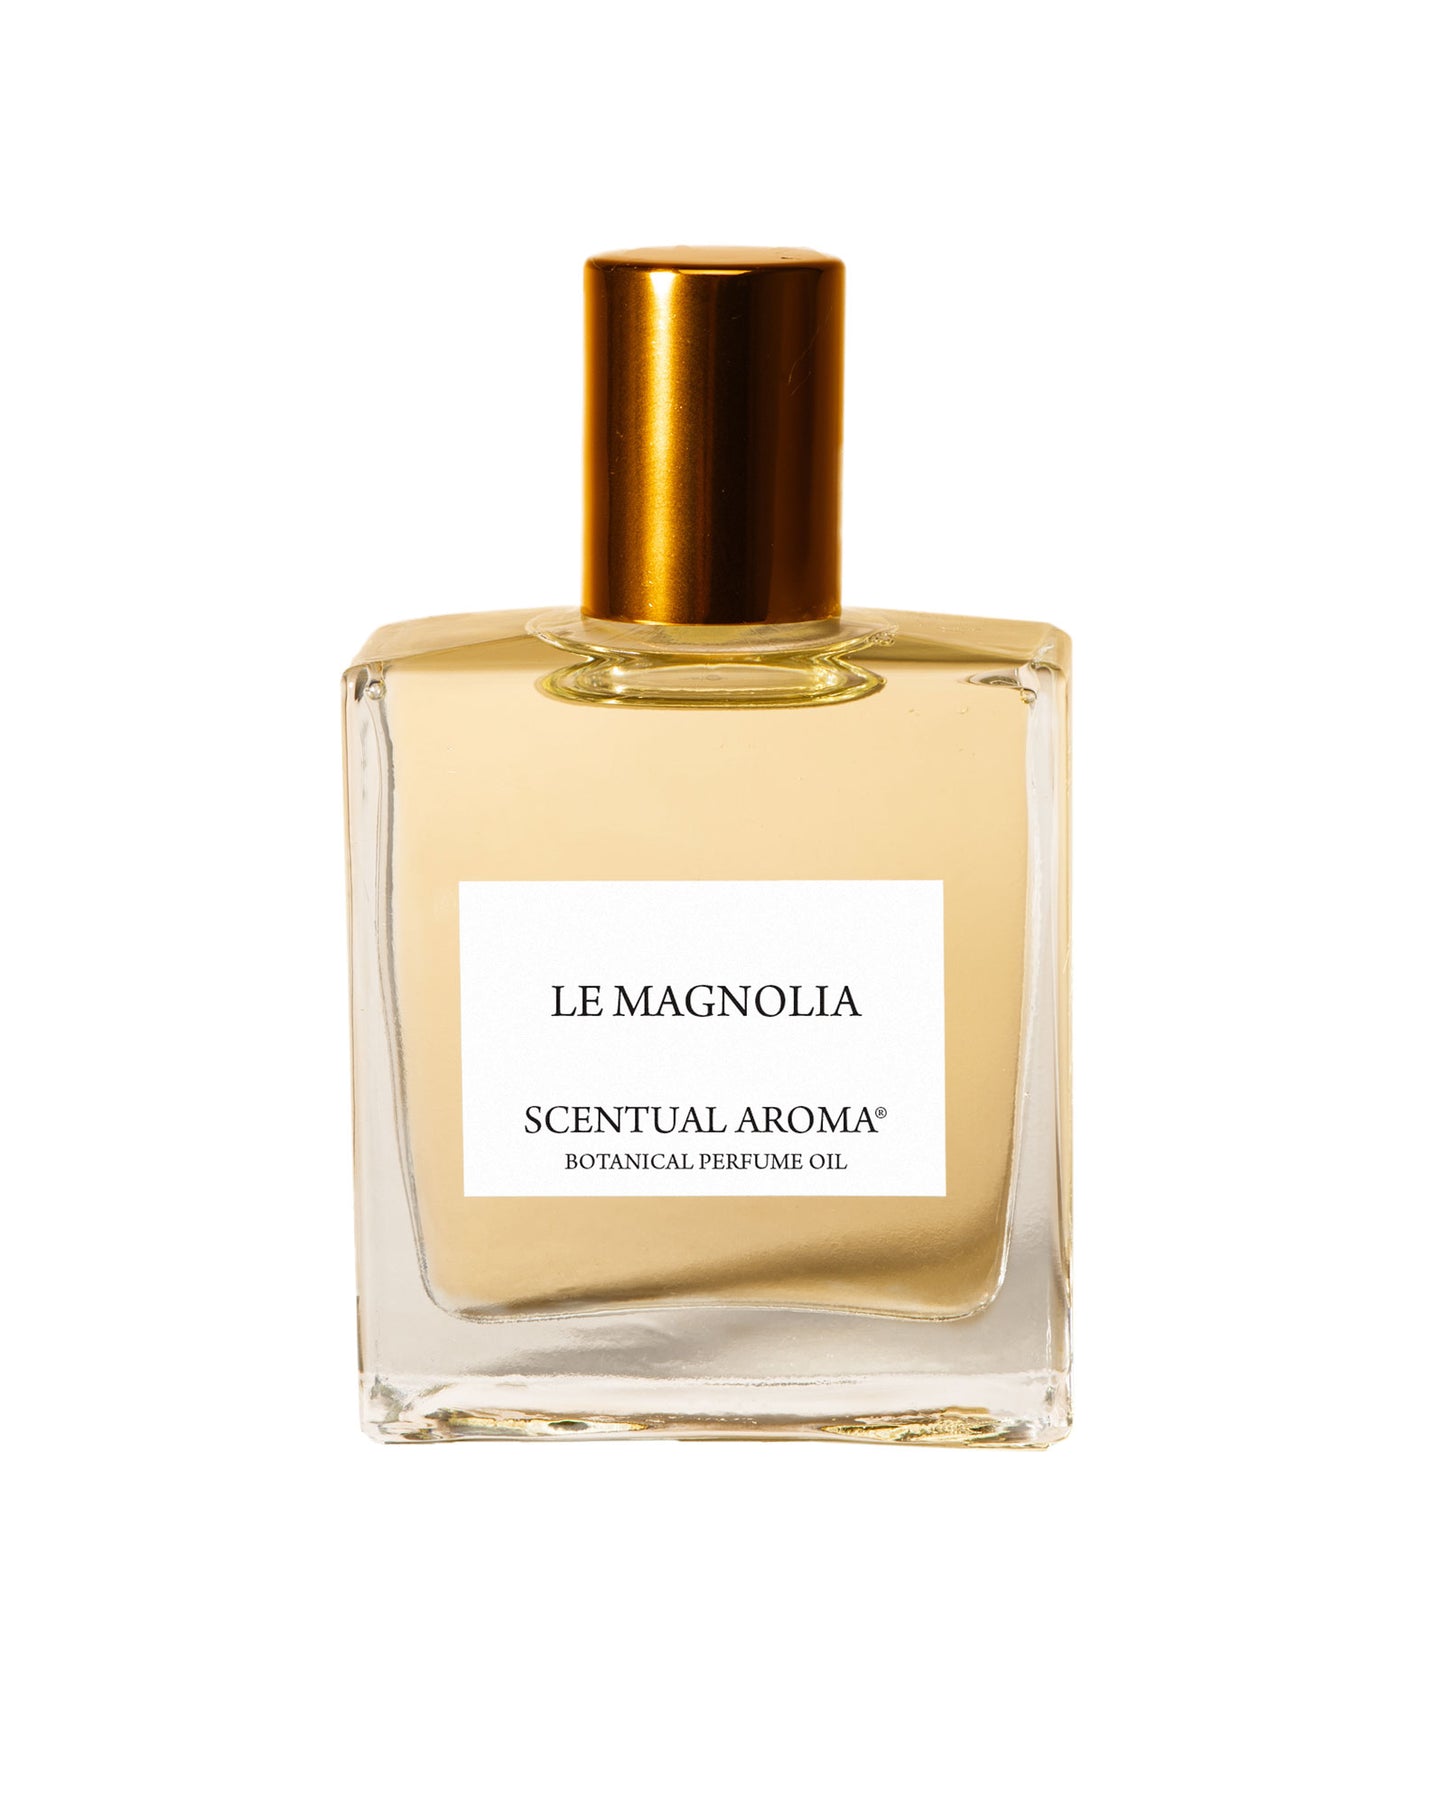 Le Magnolia Botanical Perfume Oil